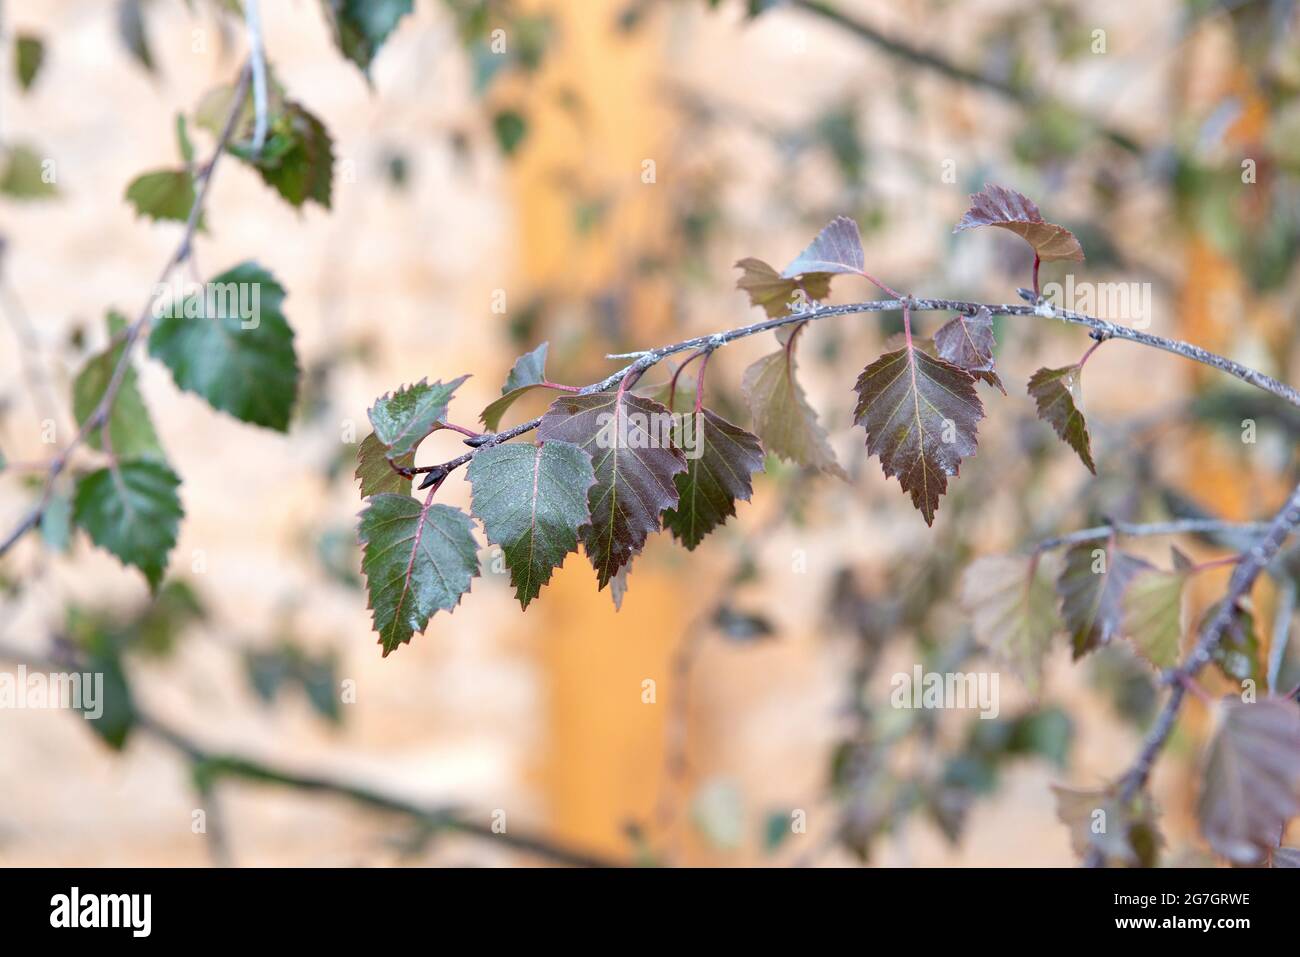 Purple birch (Betula pendula 'Purpurea'. Betula pendula Purpurea), leaves of cultivar Purpurea Stock Photo